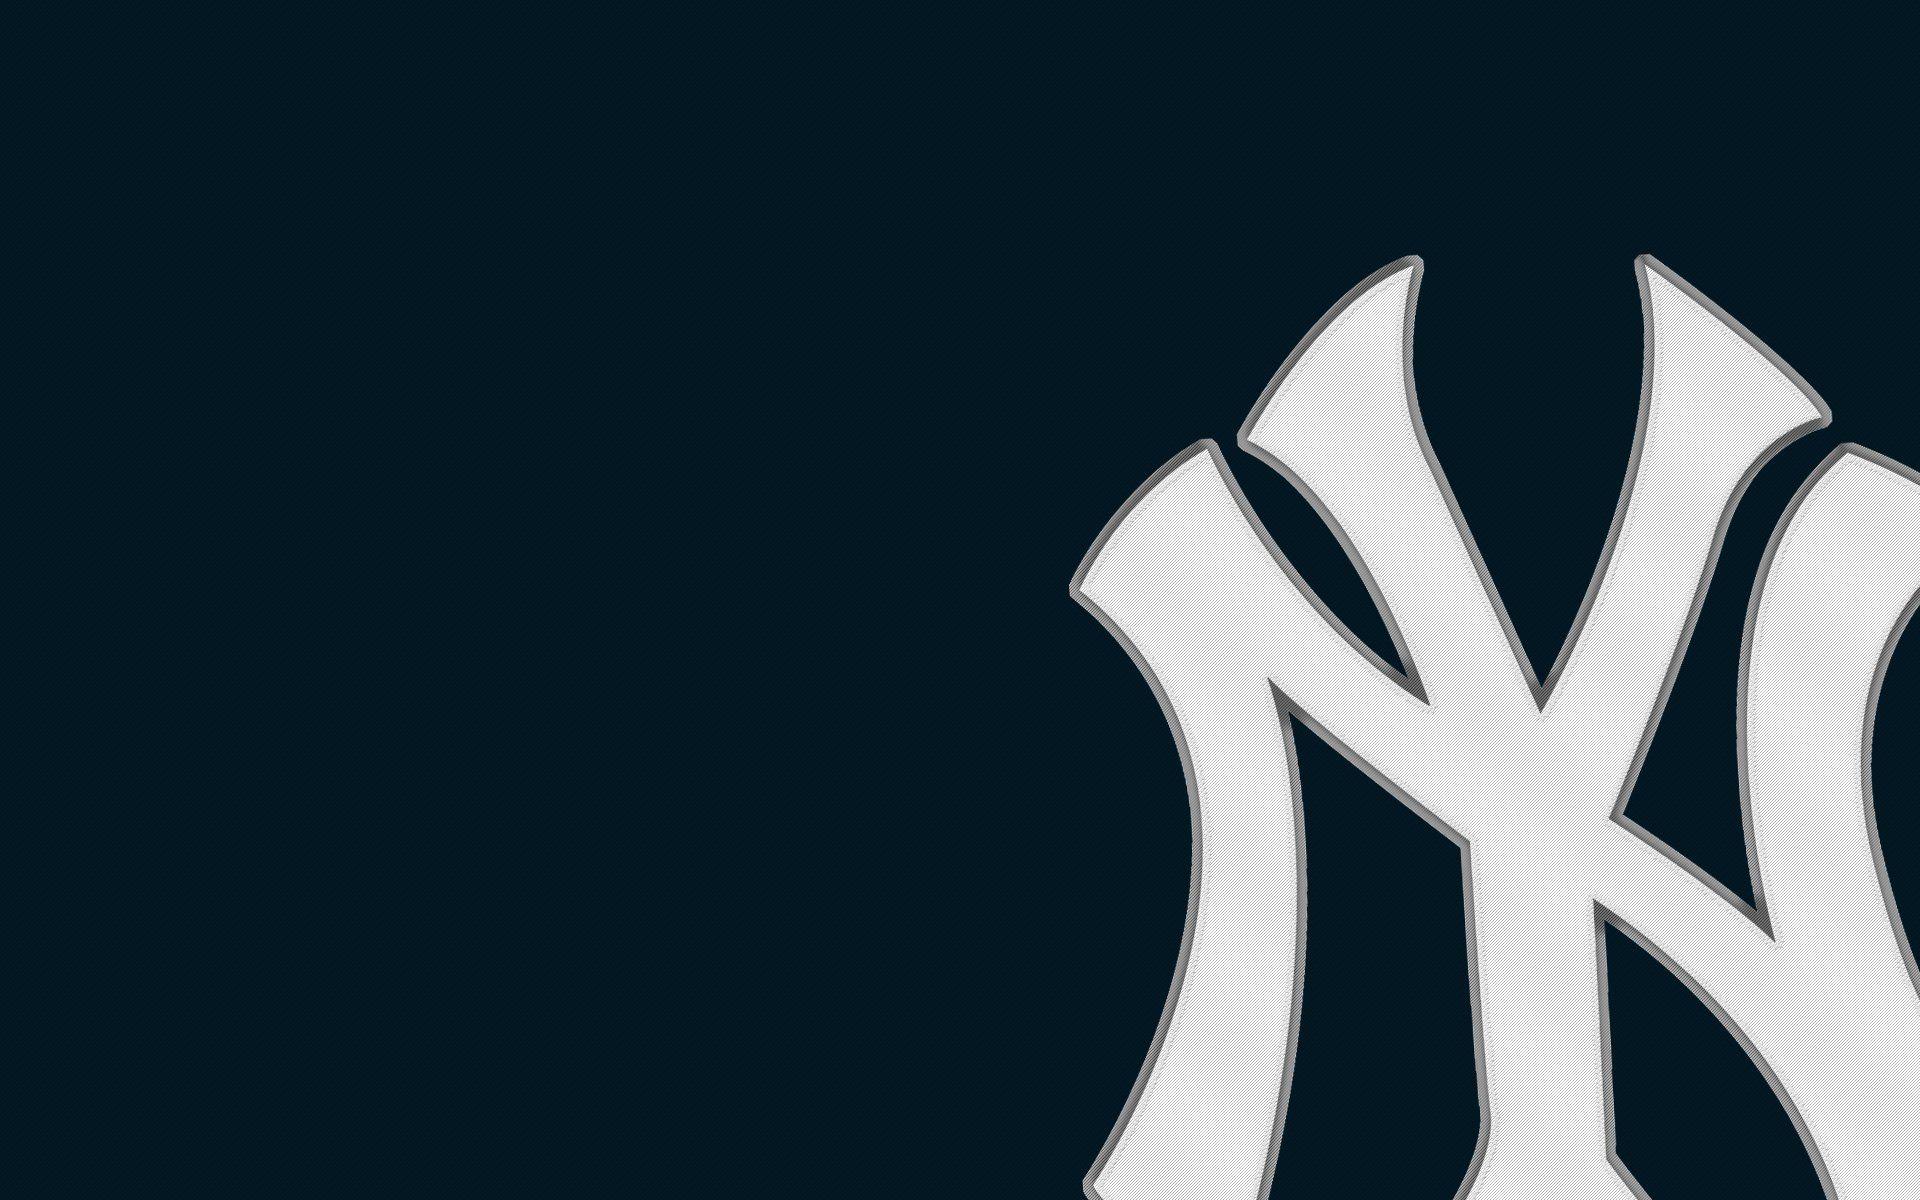 New York Yankees HD wallpaper sắc nét tận cùng sẽ đưa bạn đến với cảm giác mạnh mẽ như đang đứng trên sân baseball tươi trẻ và xem trận đấu đỉnh cao của đội nhà. Đừng bỏ lỡ cơ hội tận hưởng niềm say mê này!